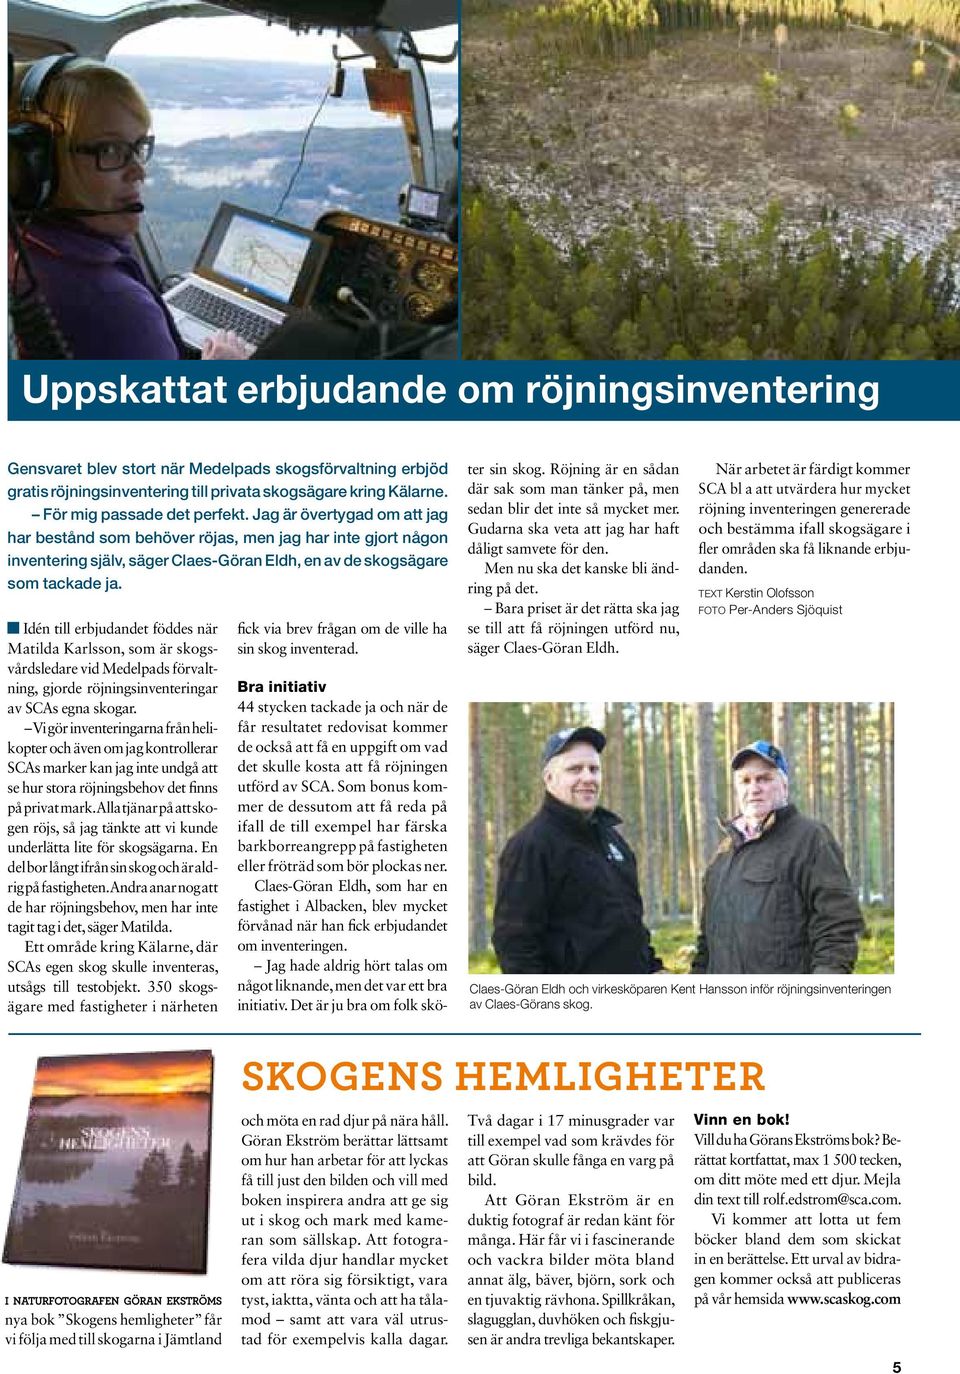 Idén till erbjudandet föddes när Matilda Karlsson, som är skogsvårdsledare vid Medelpads förvaltning, gjorde röjningsinventeringar av SCAs egna skogar.